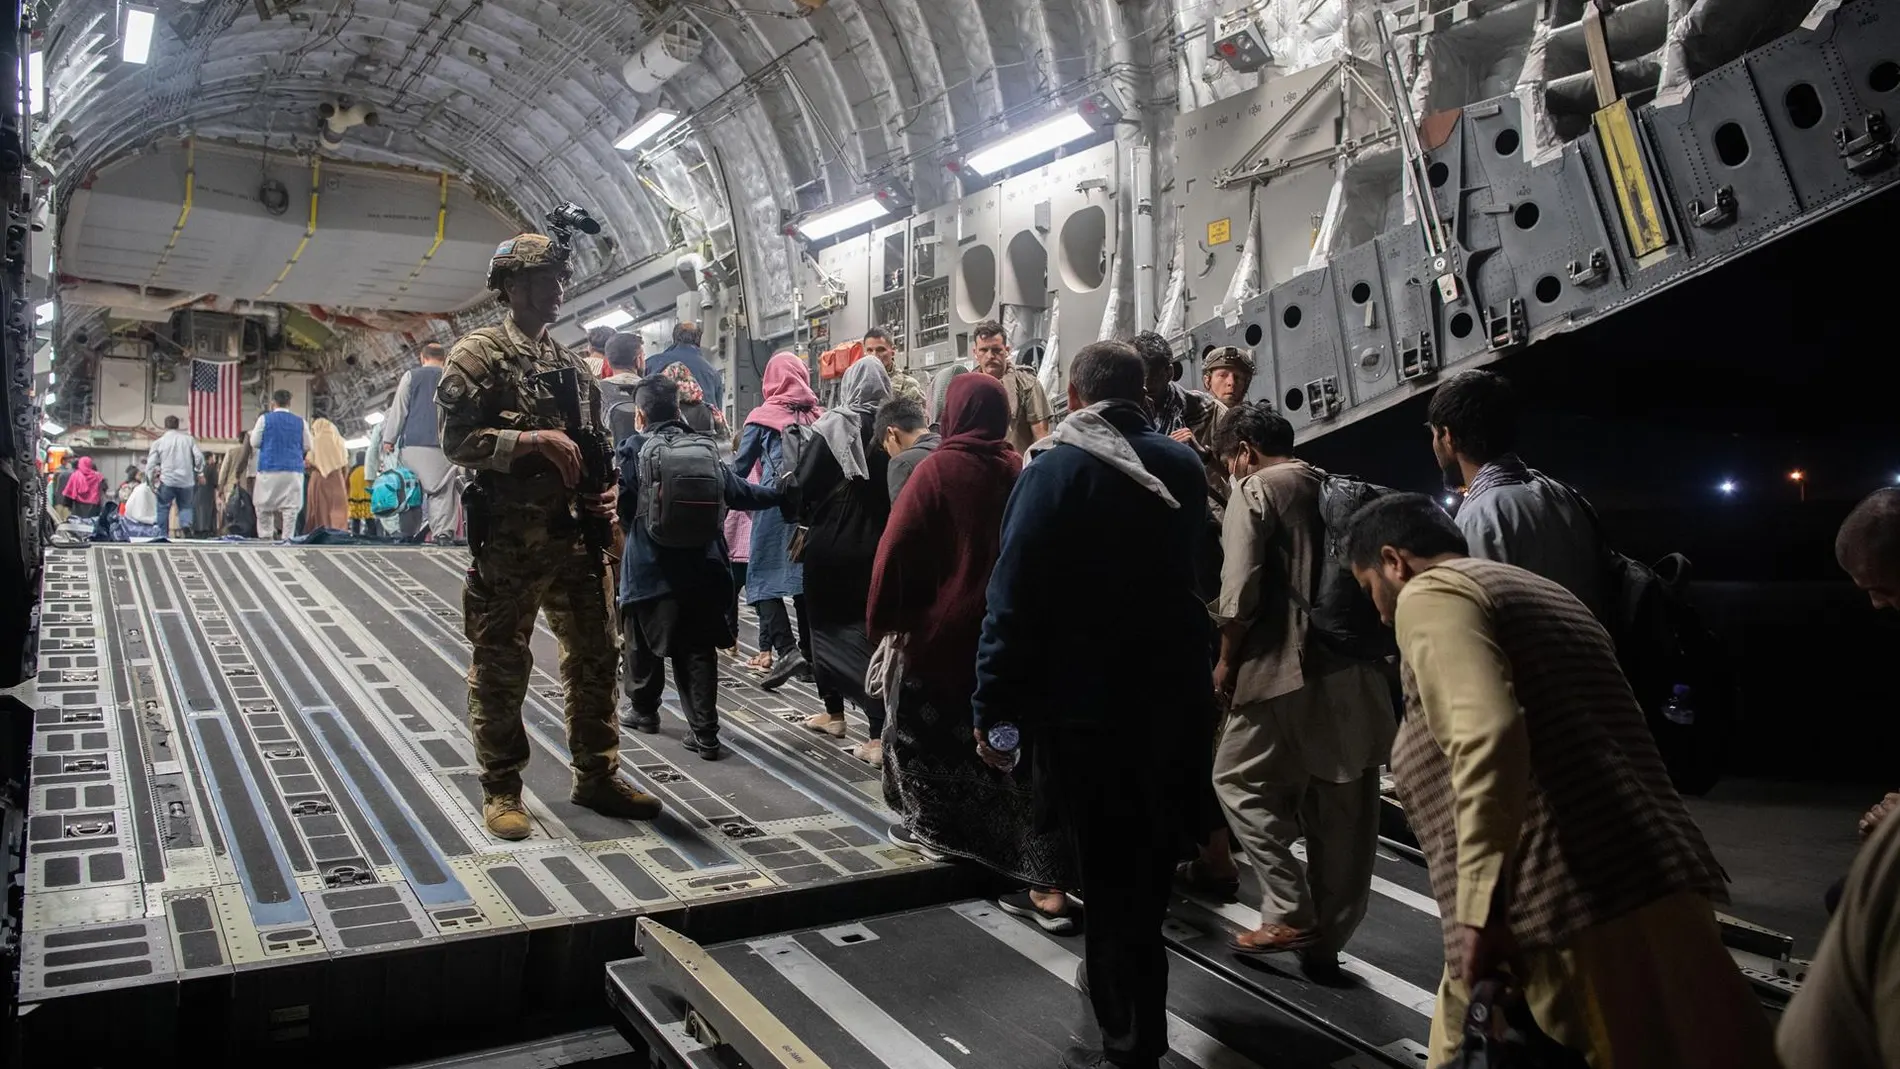 Fotografía facilitada este martes por el Departamento de Asuntos Públicos del Comando Central de EE.UU., a través de DVIDS, en la que se registró el pasado domingo la evacuación de civiles afganos al abordar un avión C-17 Globemaster III de la Fuerza Aérea de los EE.UU., en el Aeropuerto Internacional Hamid Karzai, en Kabul (Afganistán).